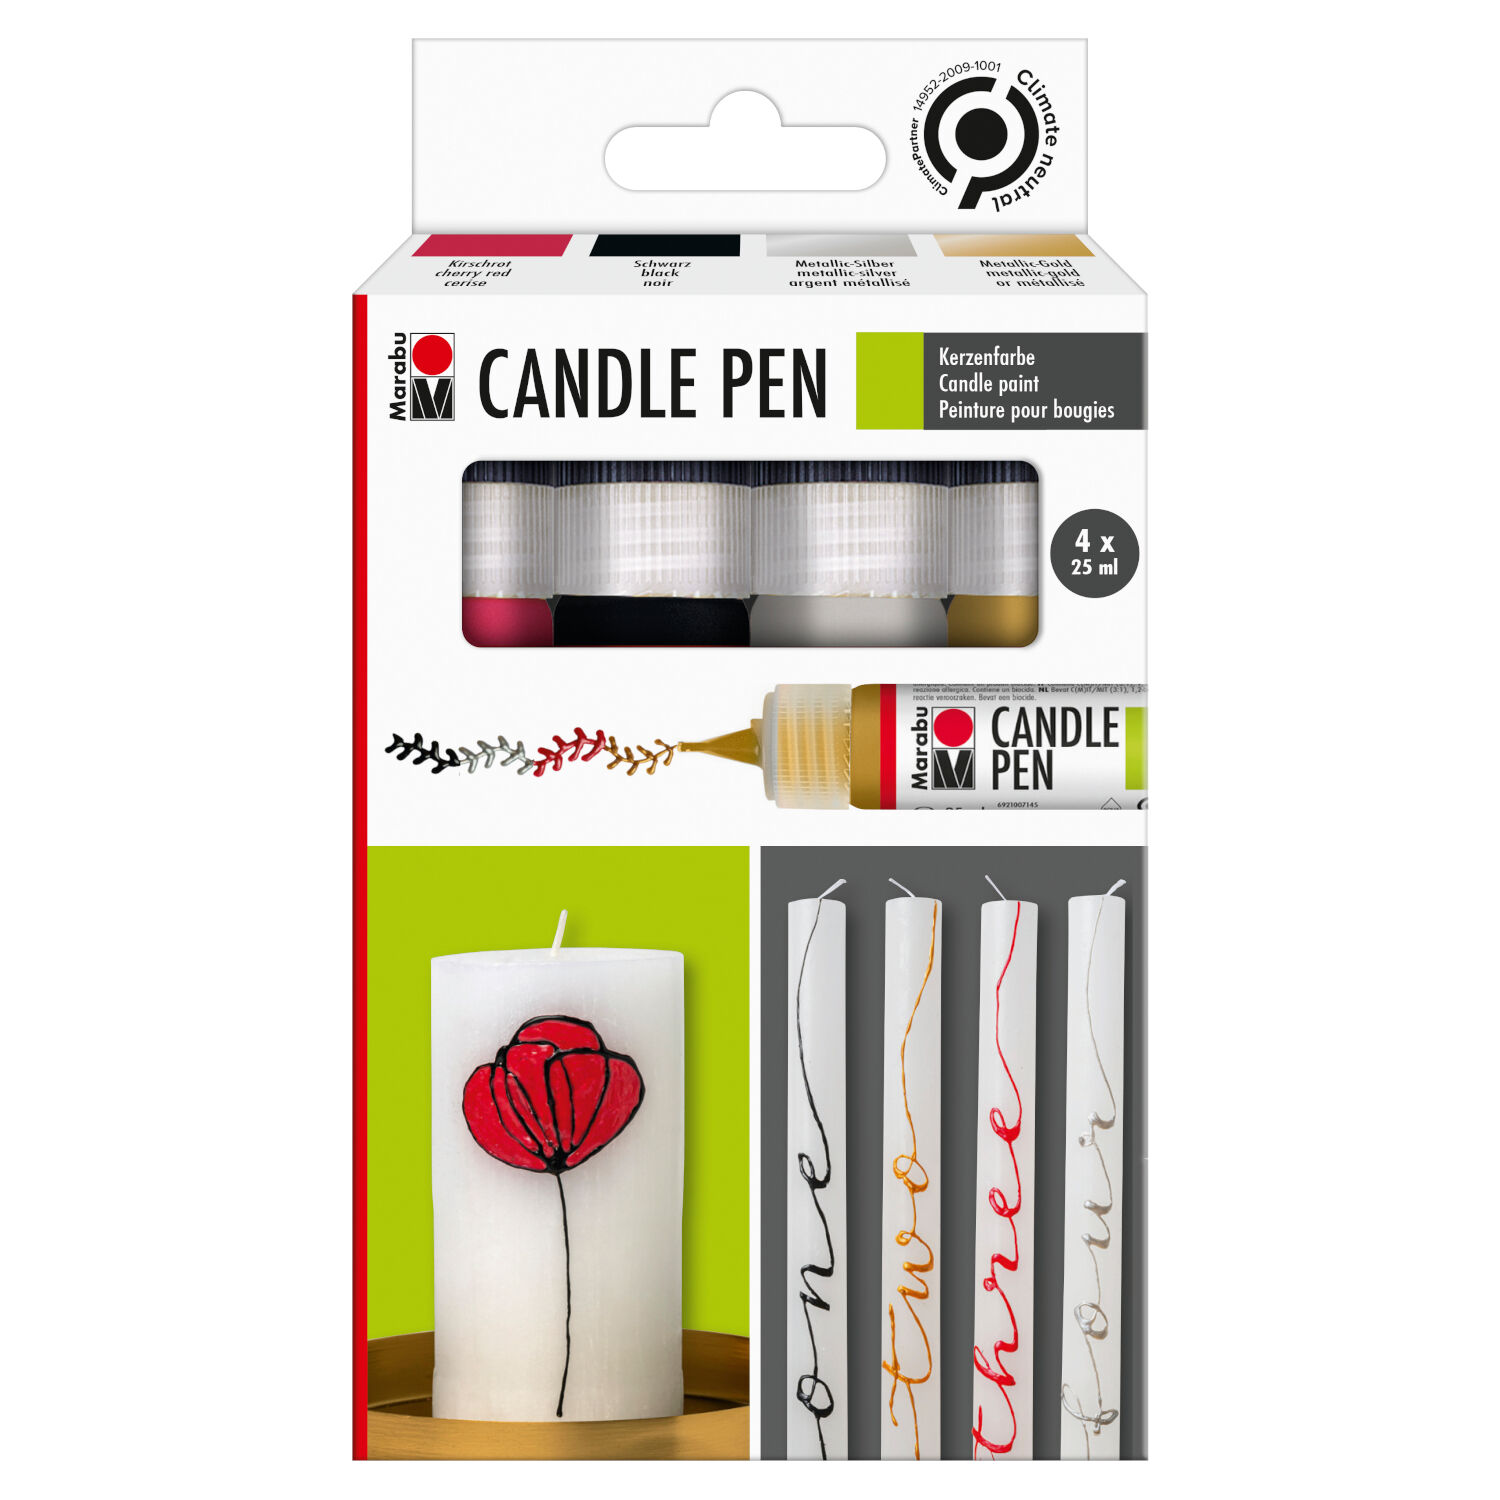 NEU Marabu Candle Pen / Kerzen-Stift Set, 4 x 25 ml